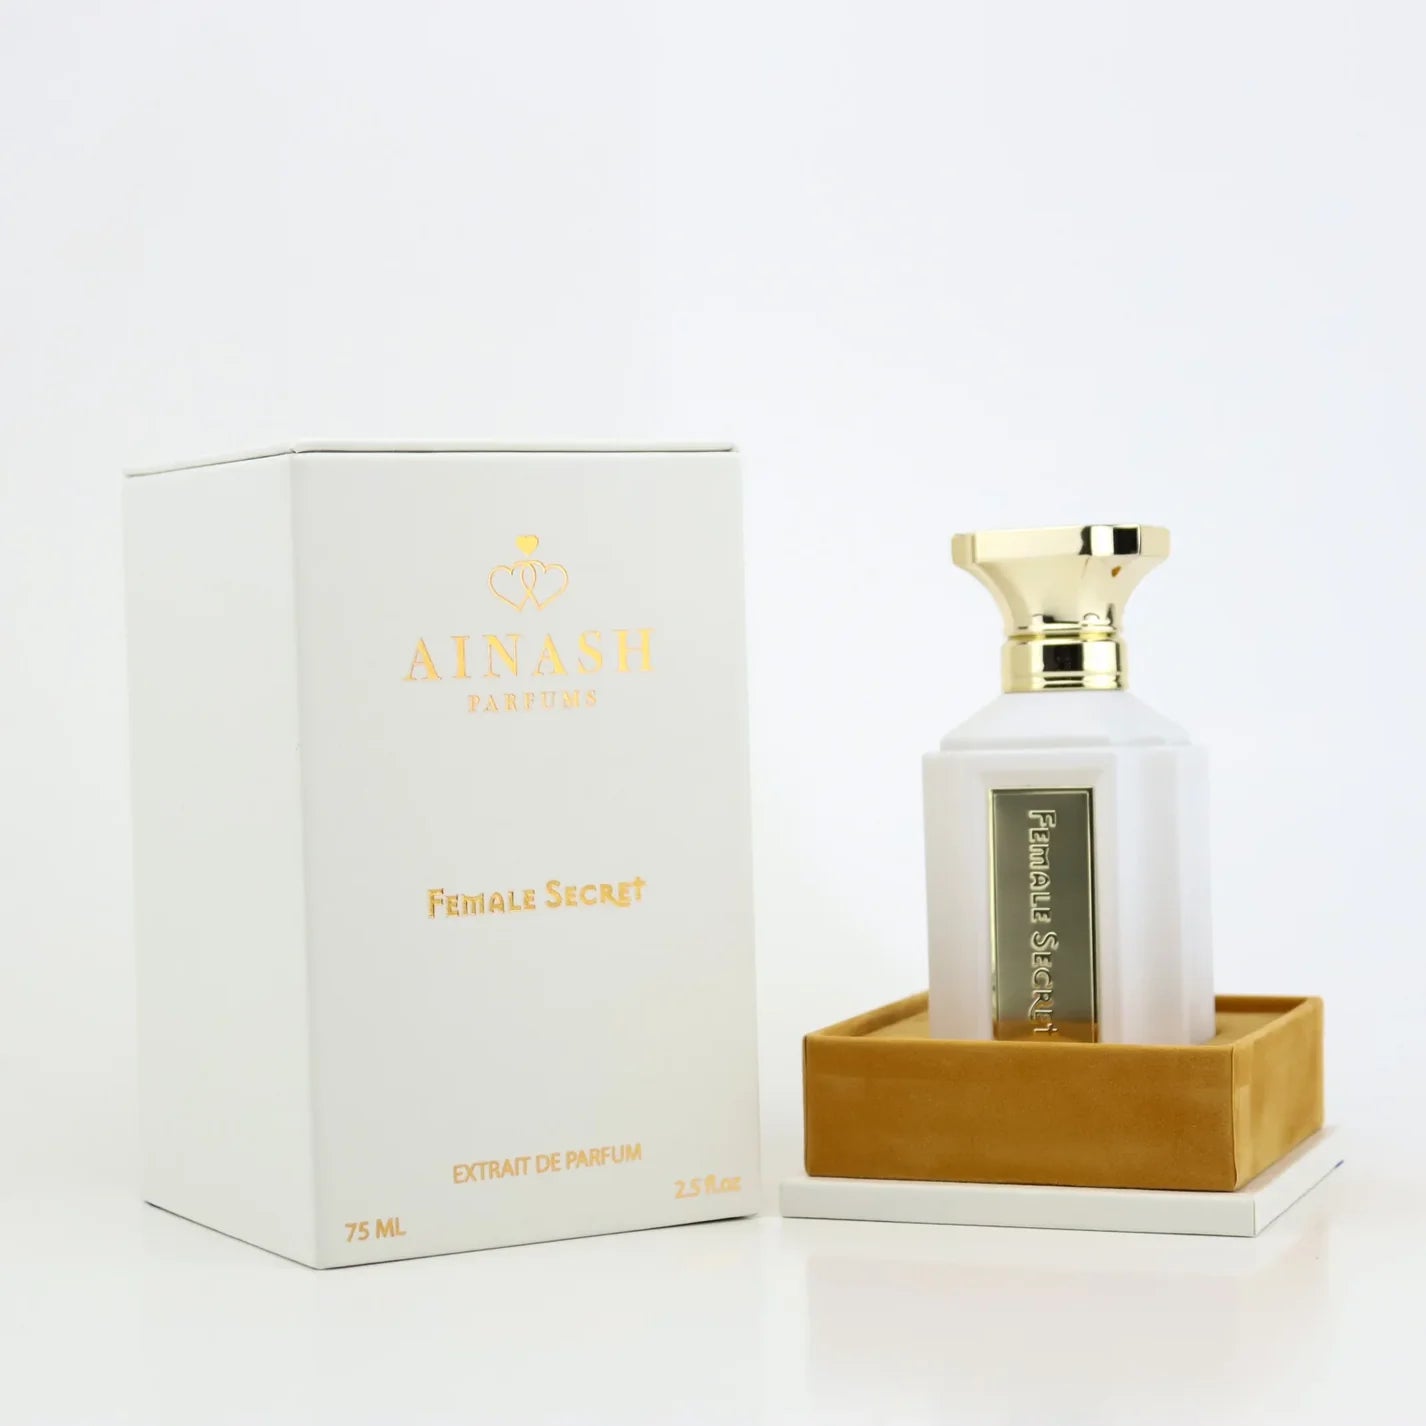 Female Secret Extrait De Parfum 2.5 oz 75 ml By Ainash Parfums